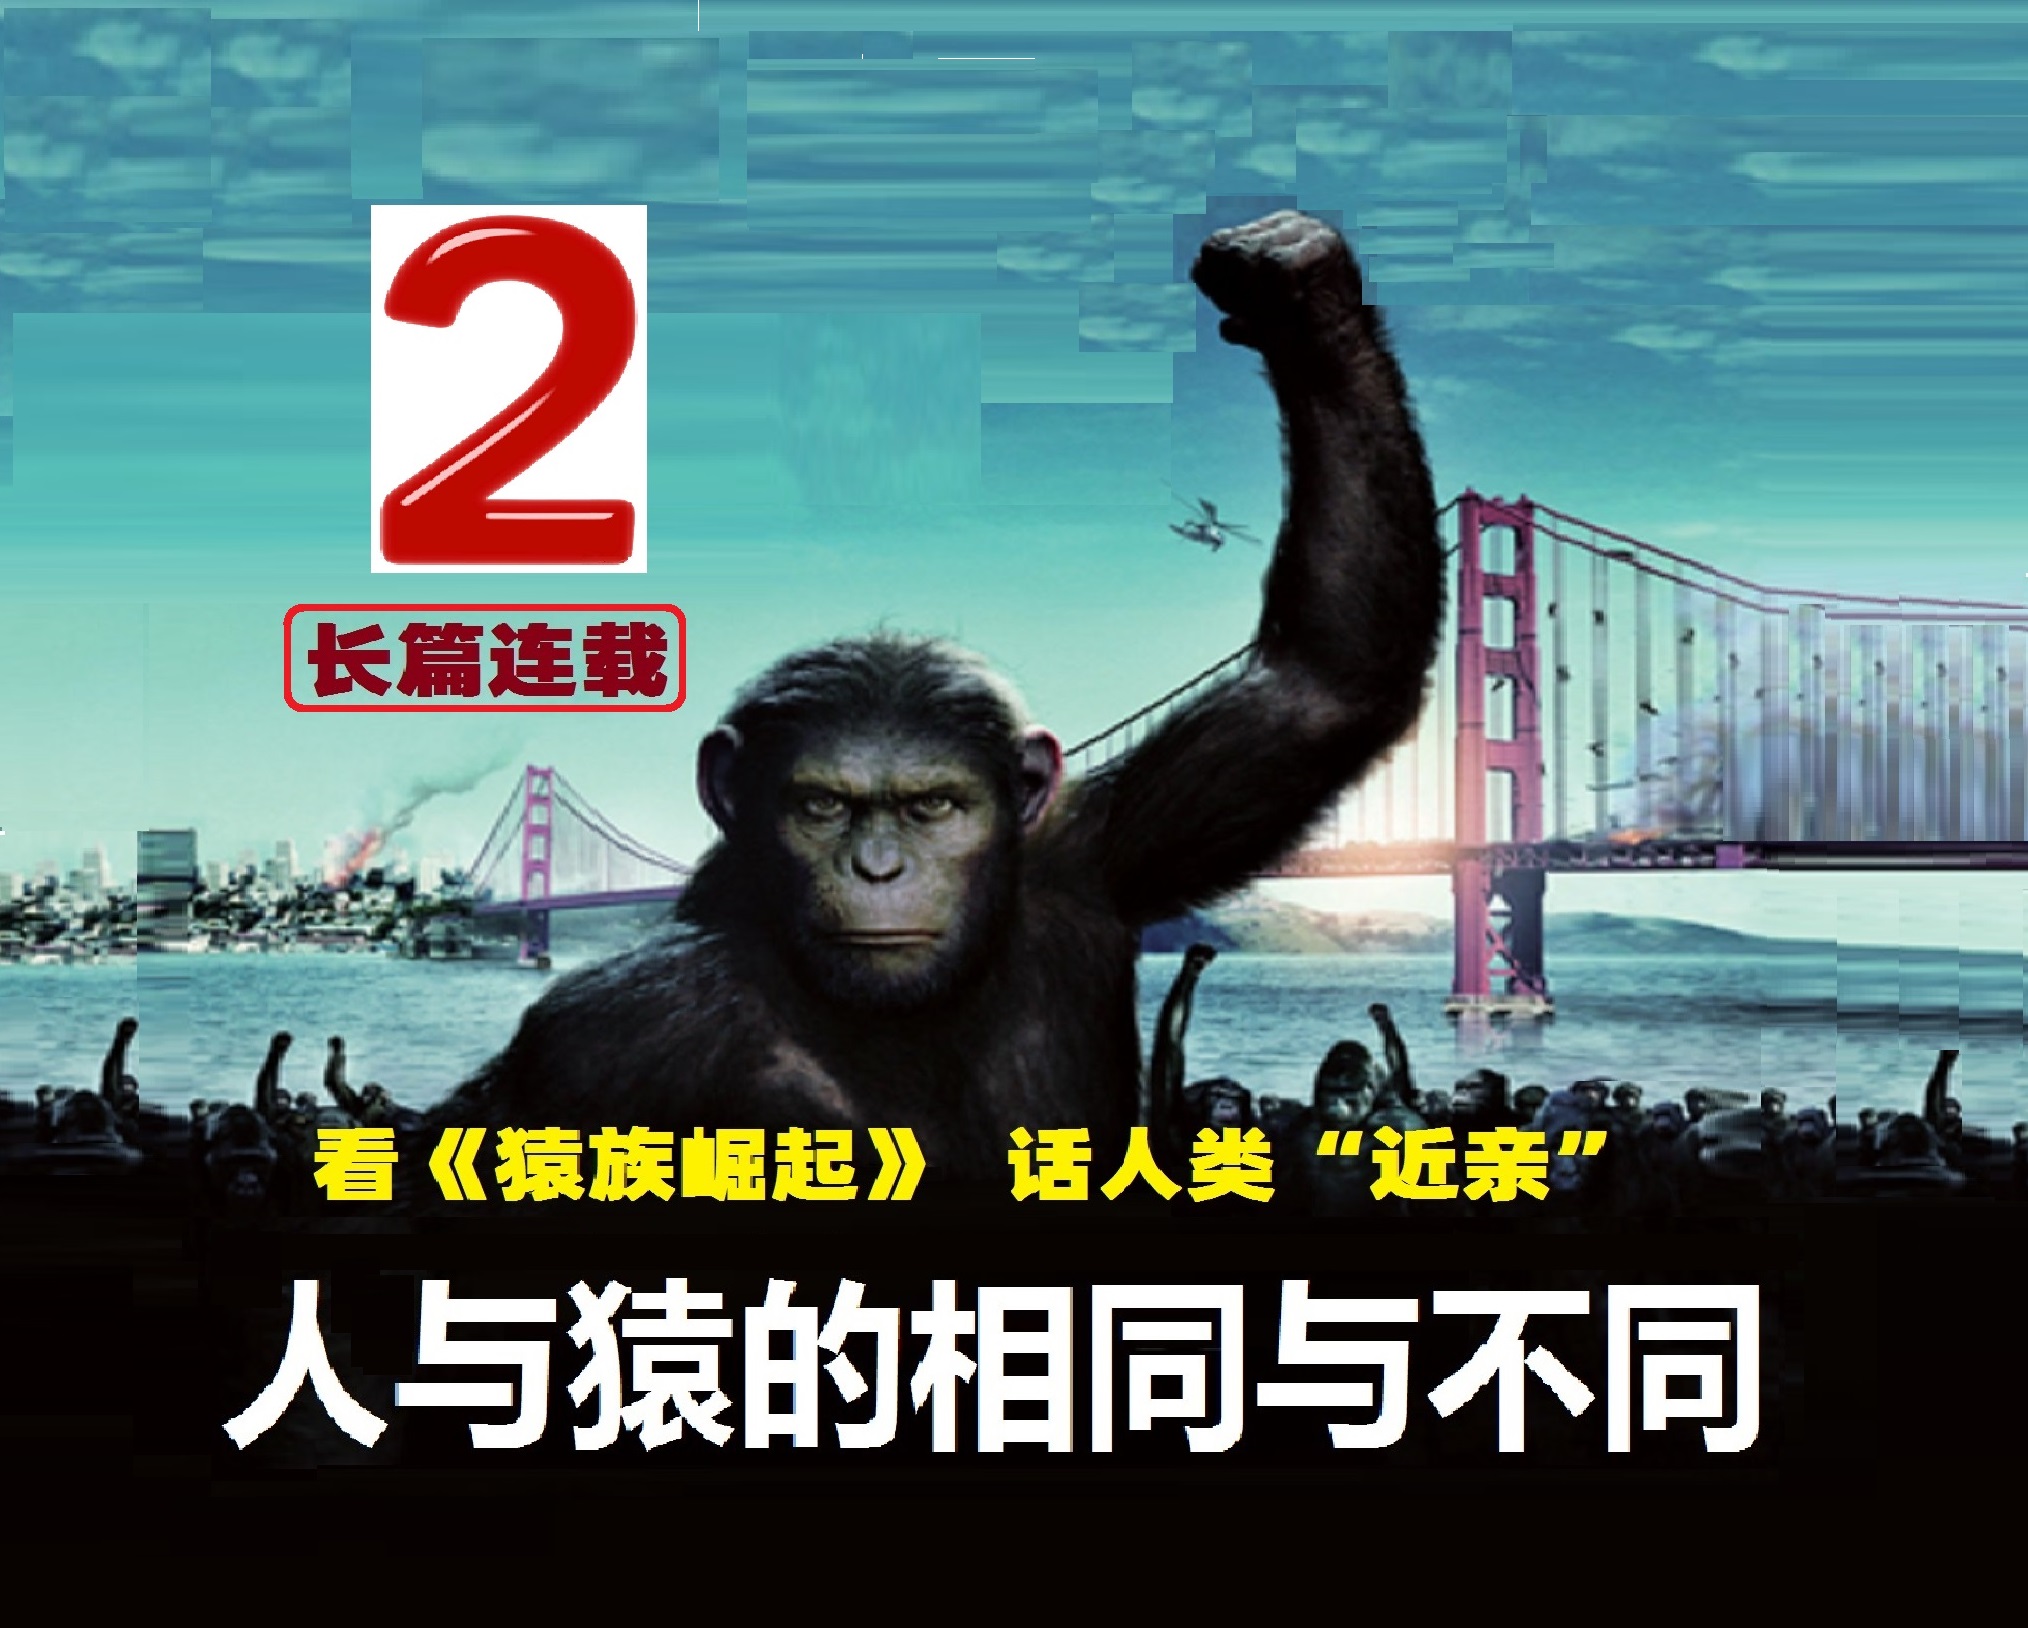 猿猴崛起电影剧情「简介」
